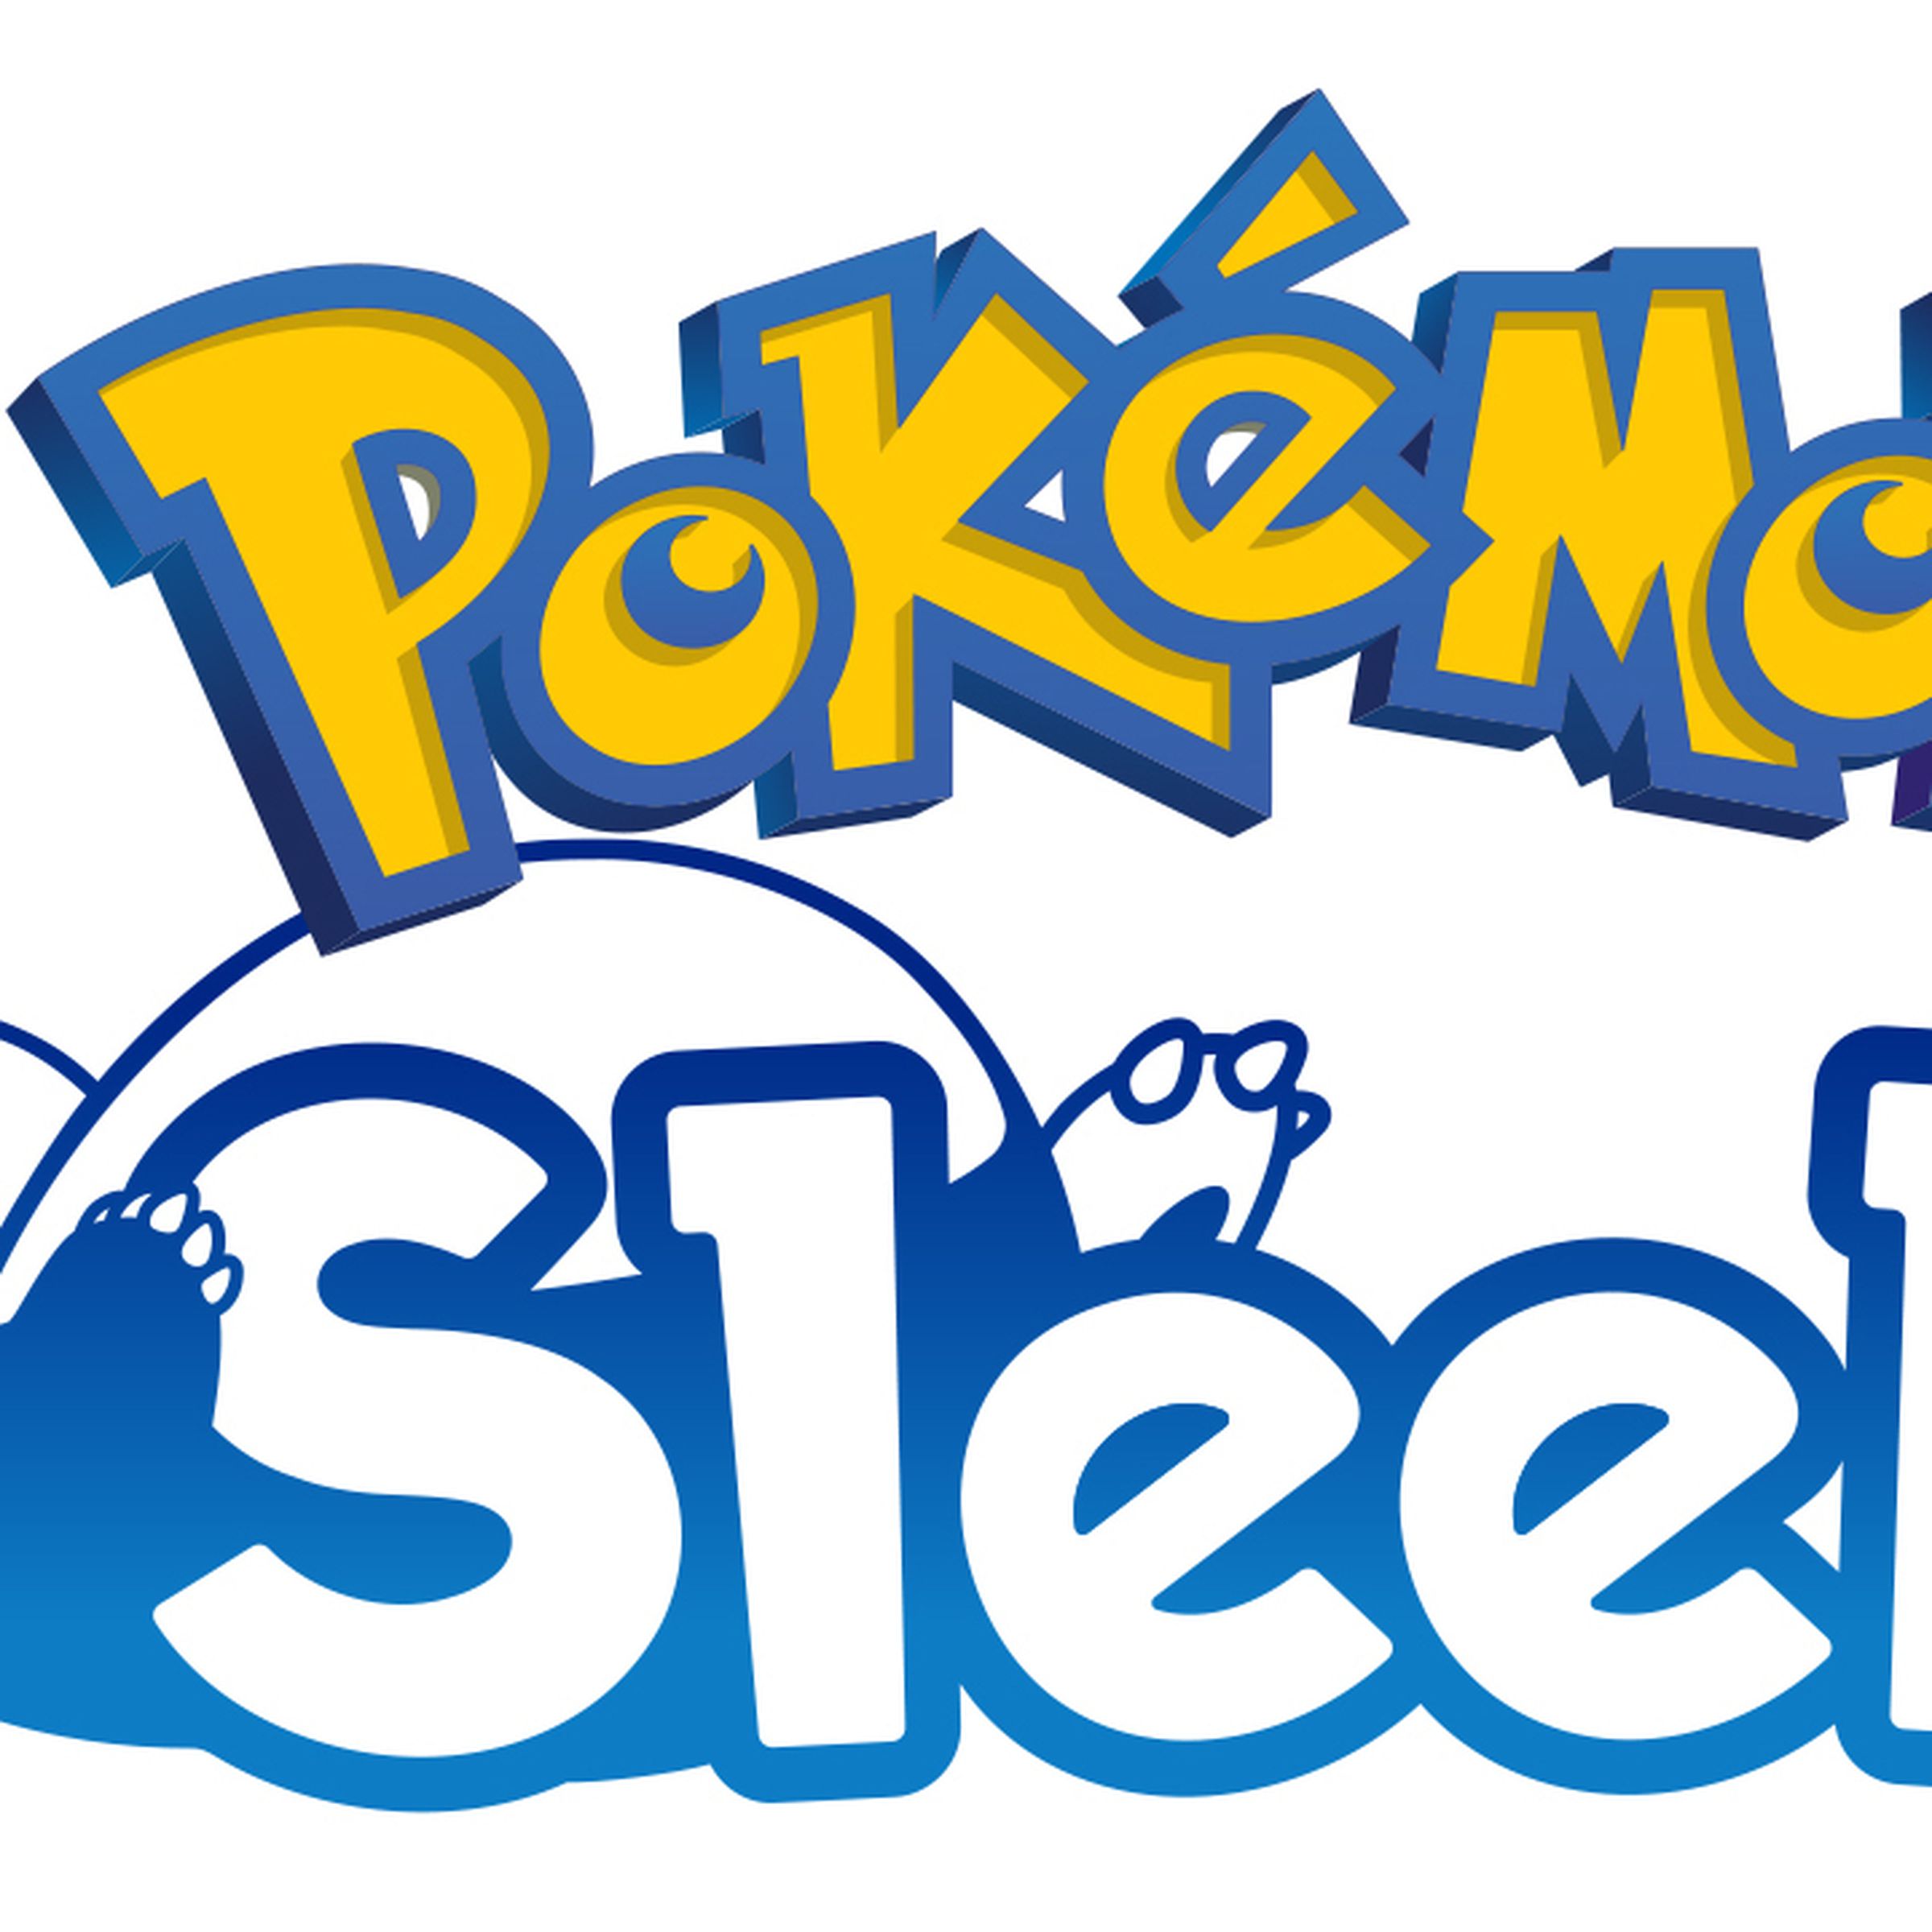 The logo for Pokémon Sleep.